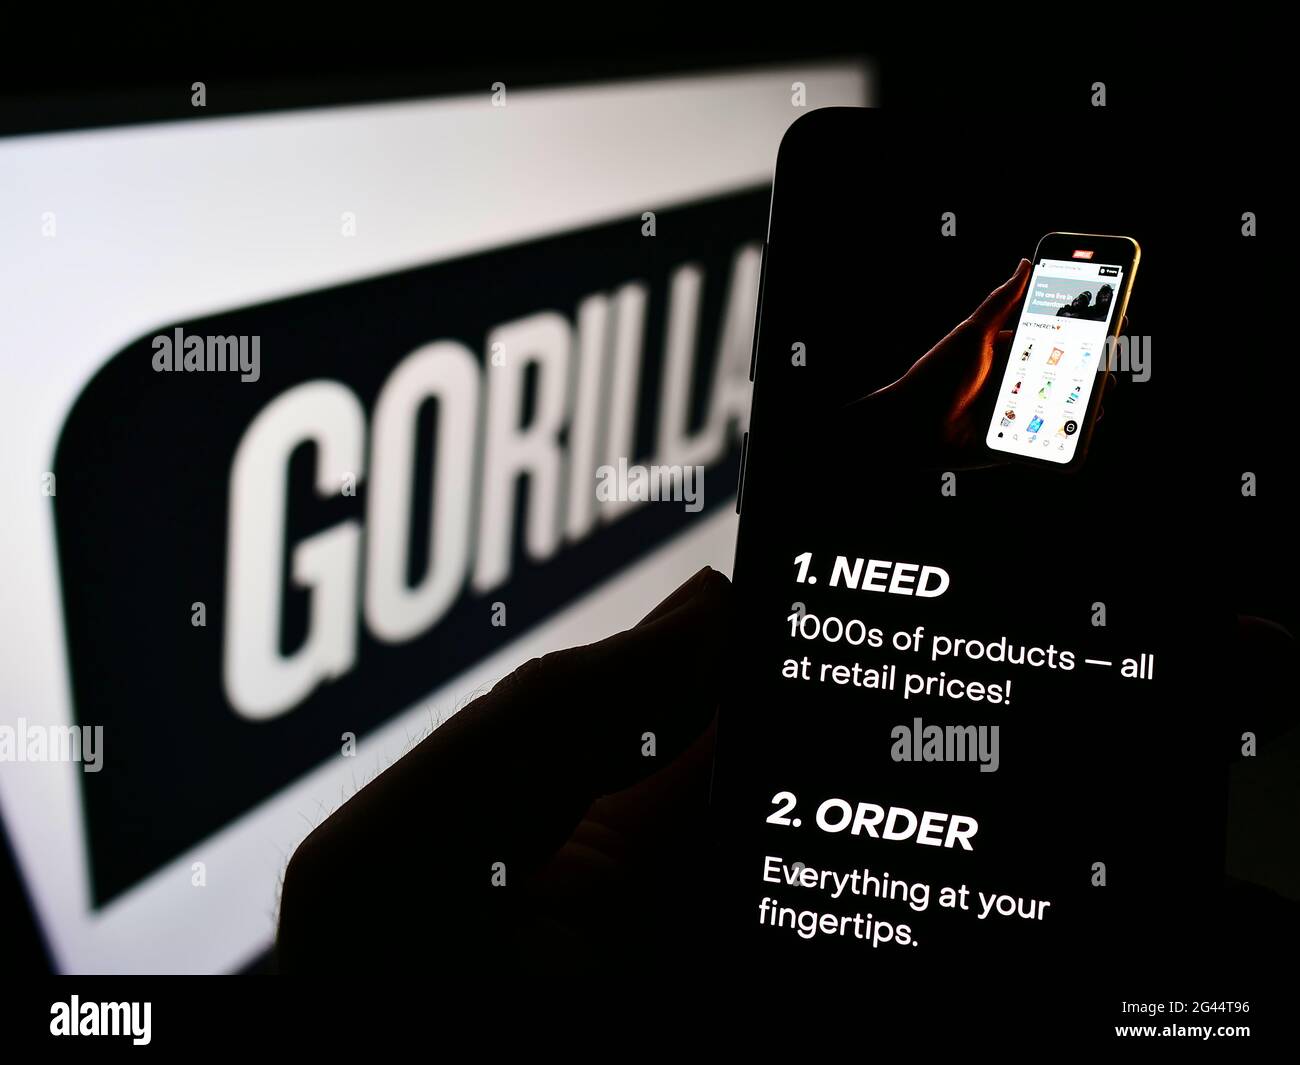 Personne tenant un téléphone portable avec le site de la société allemande de livraison Gorillas technologies GmbH sur écran avec logo. Centre de mise au point de l'écran du téléphone. Banque D'Images